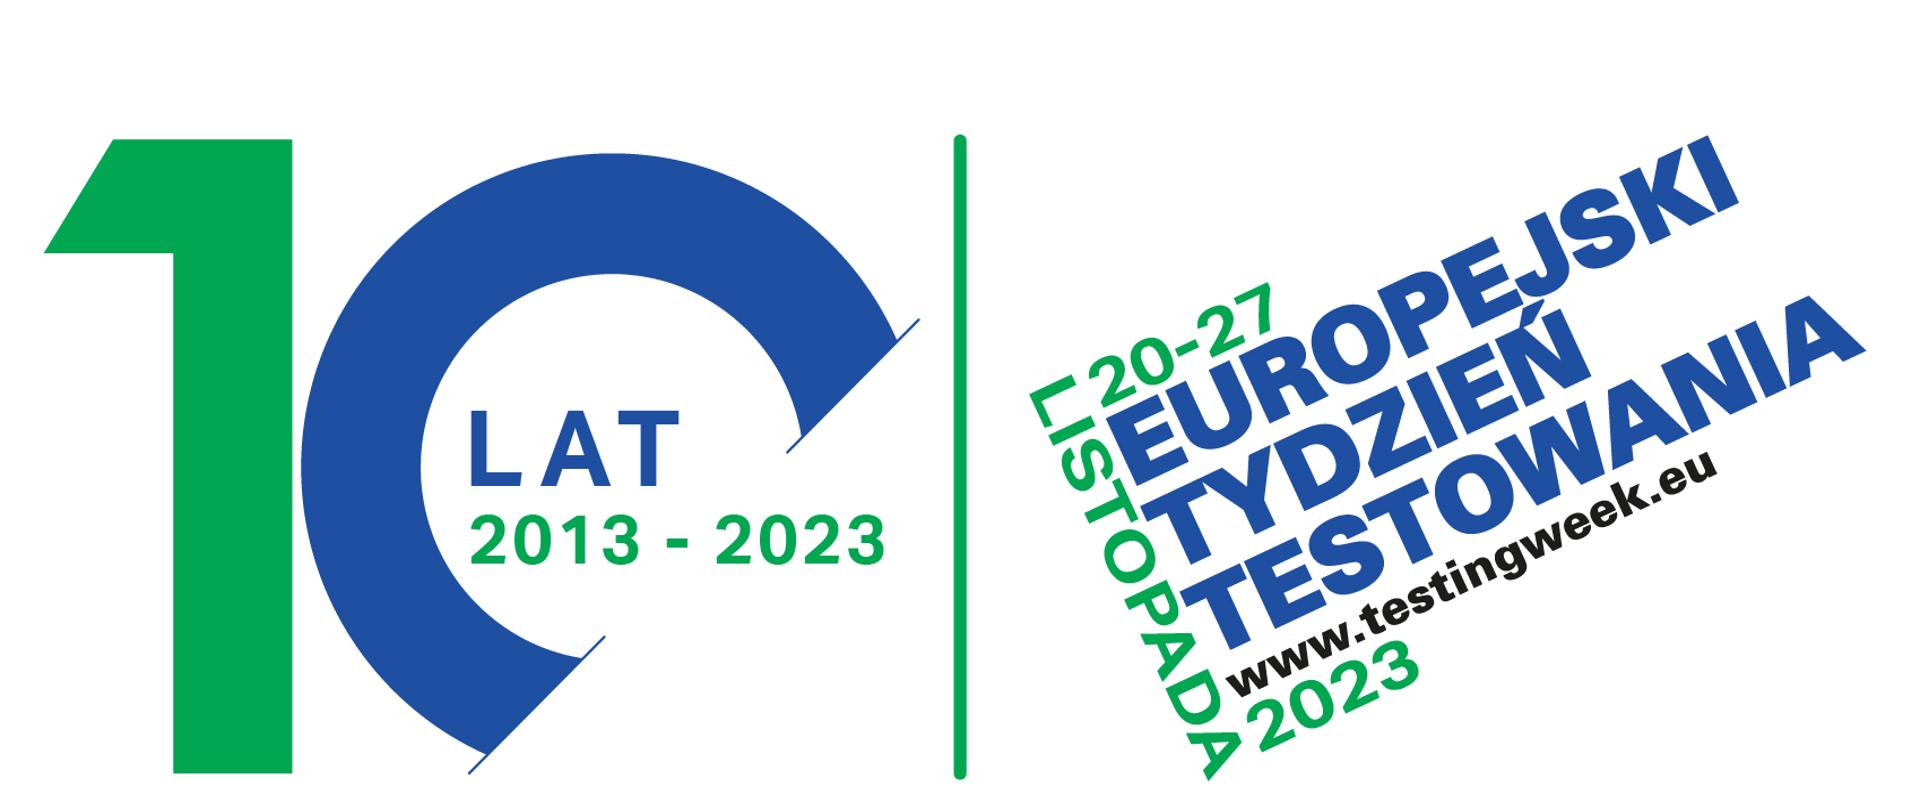 baner Europejskiego Tygodnia Testowania z podanym okresem 20 do 27 listopada 2023 roku oraz stroną internetową www.testingweek.eu